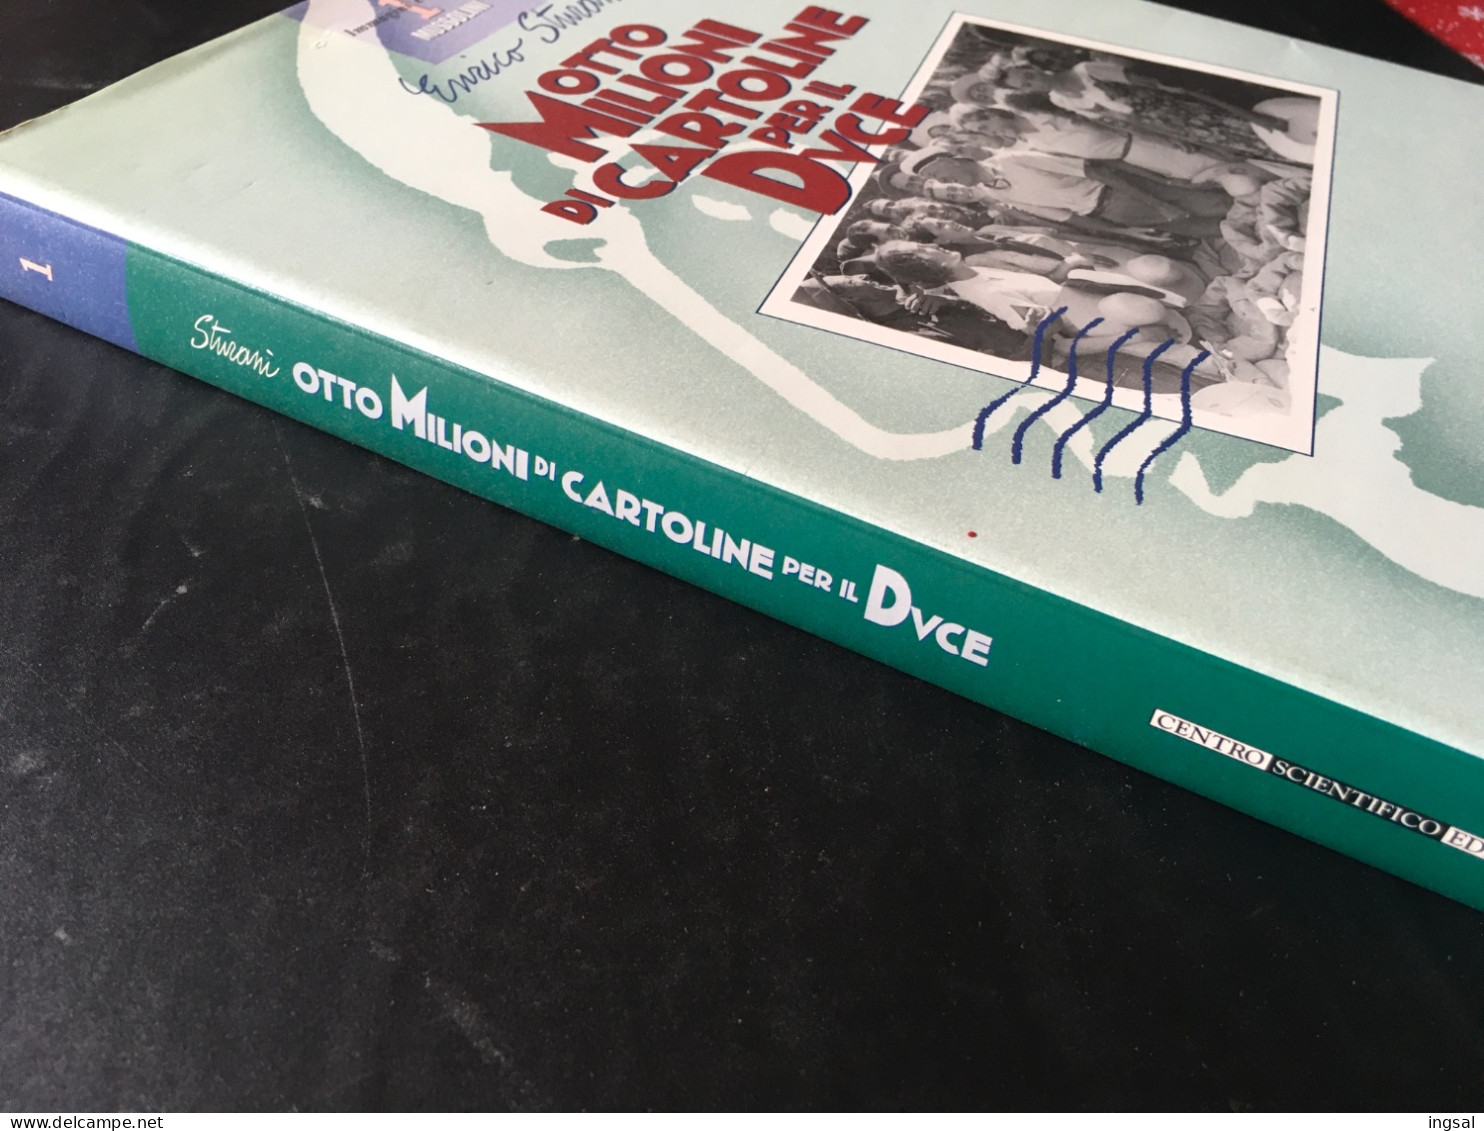 Immagini E Storia Di Mussolini…..Otto Milioni Di Cartoline Per Il Duce ……” Editore…Centro Scientifico......Edizione 1995 - Bibliography